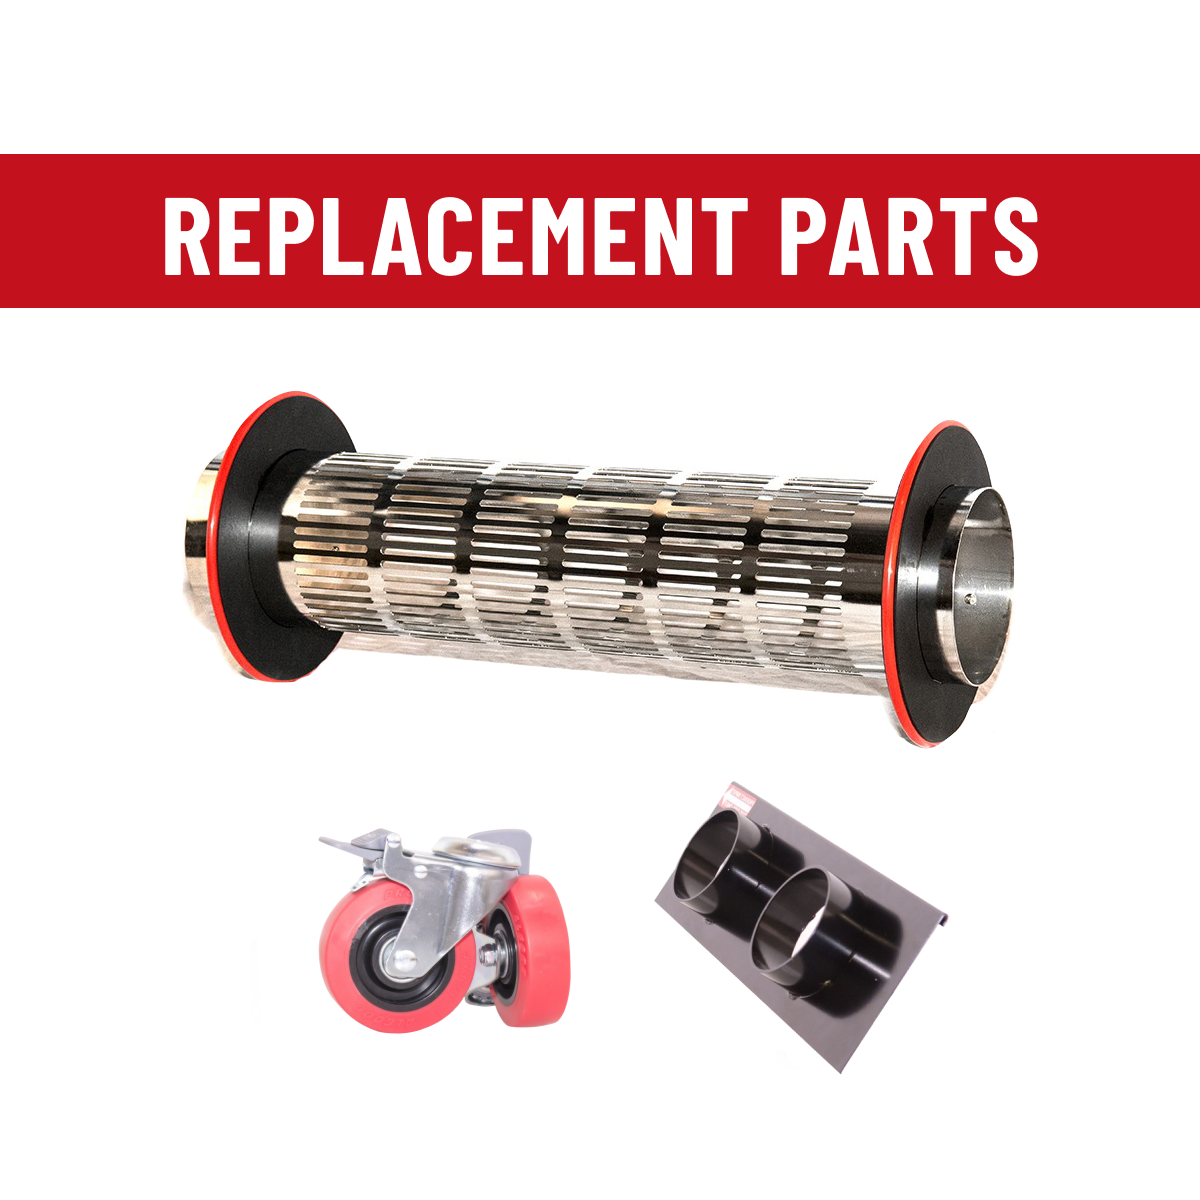 CenturionPro Replacement Parts